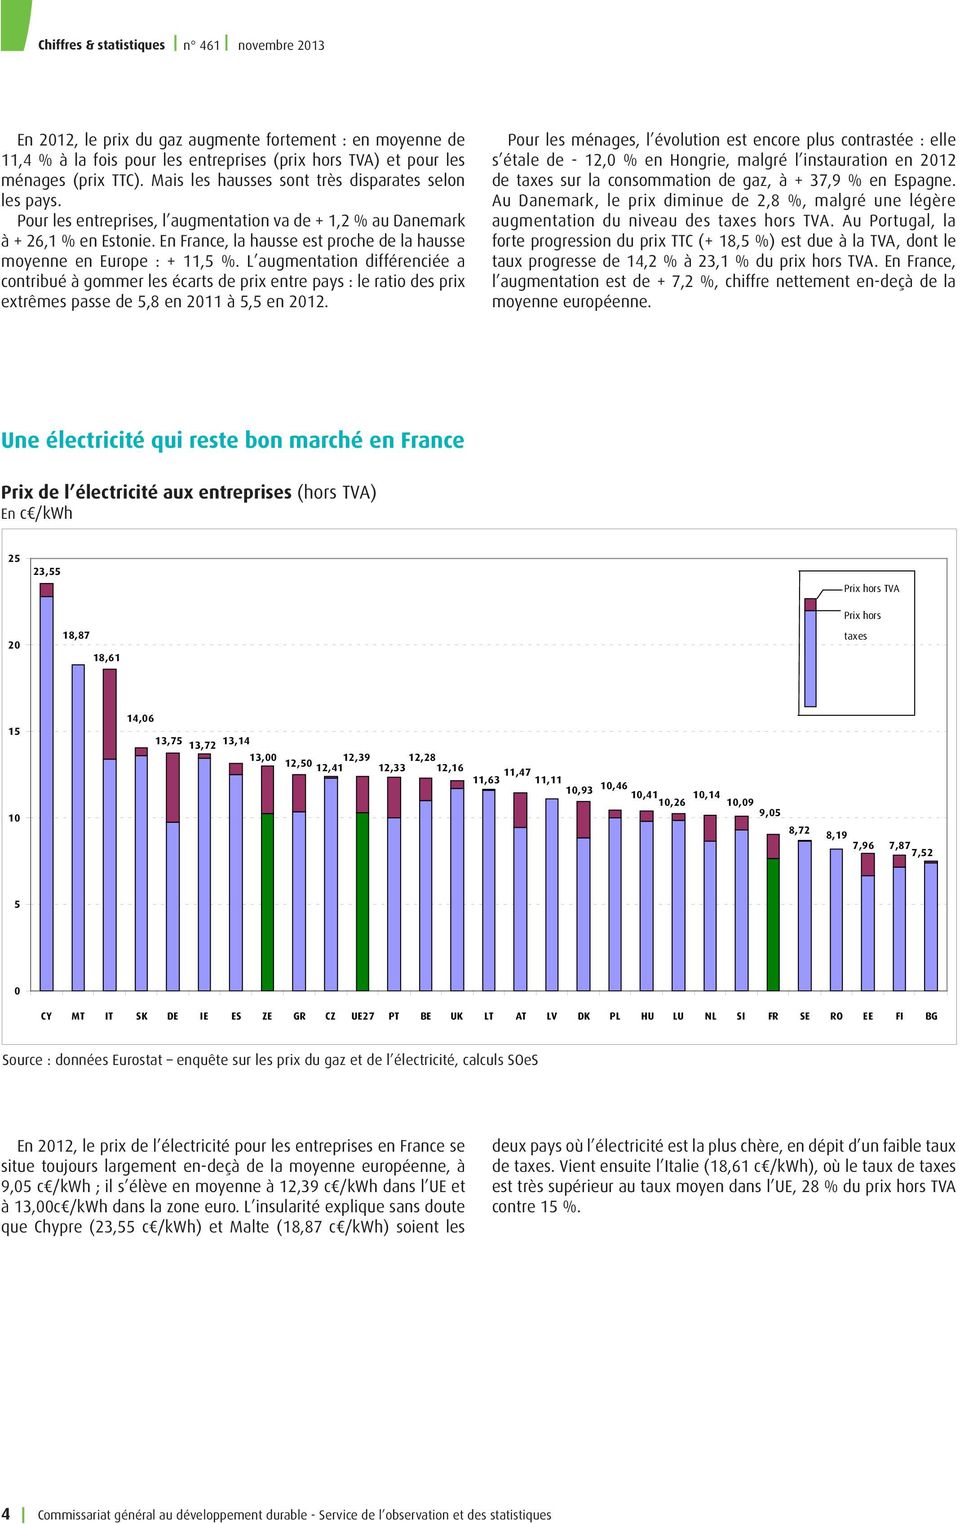 L augmentation différenciée a contribué à gommer les écarts de prix entre pays : le ratio des prix extrêmes passe de 5,8 en 2011 à 5,5 en 2012.